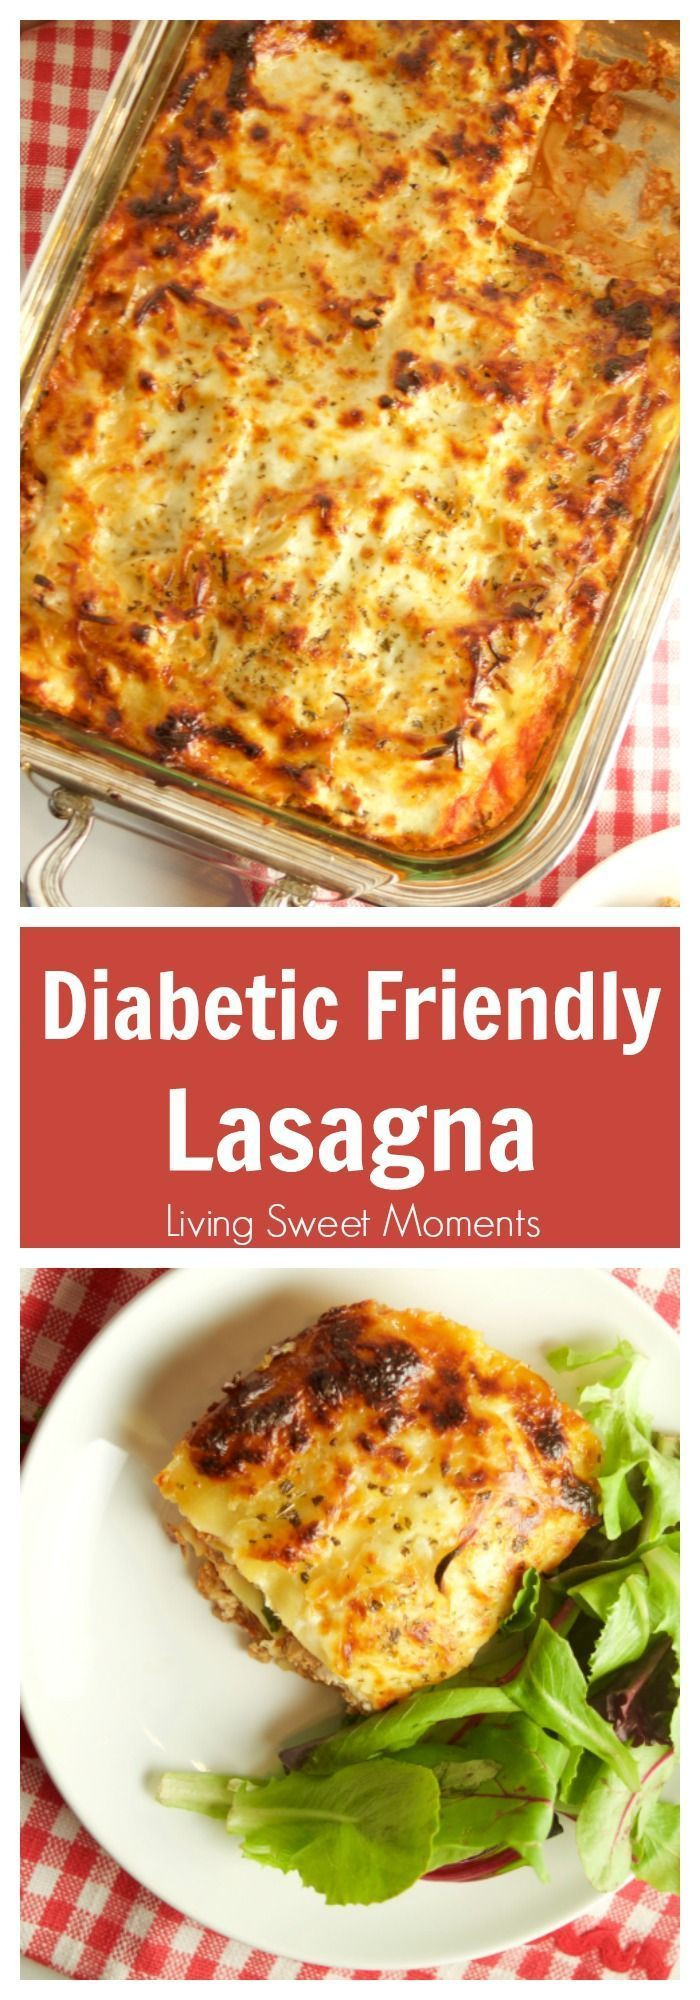 Diabetic Dinners Ideas
 100 Diabetic Dinner Recipes on Pinterest